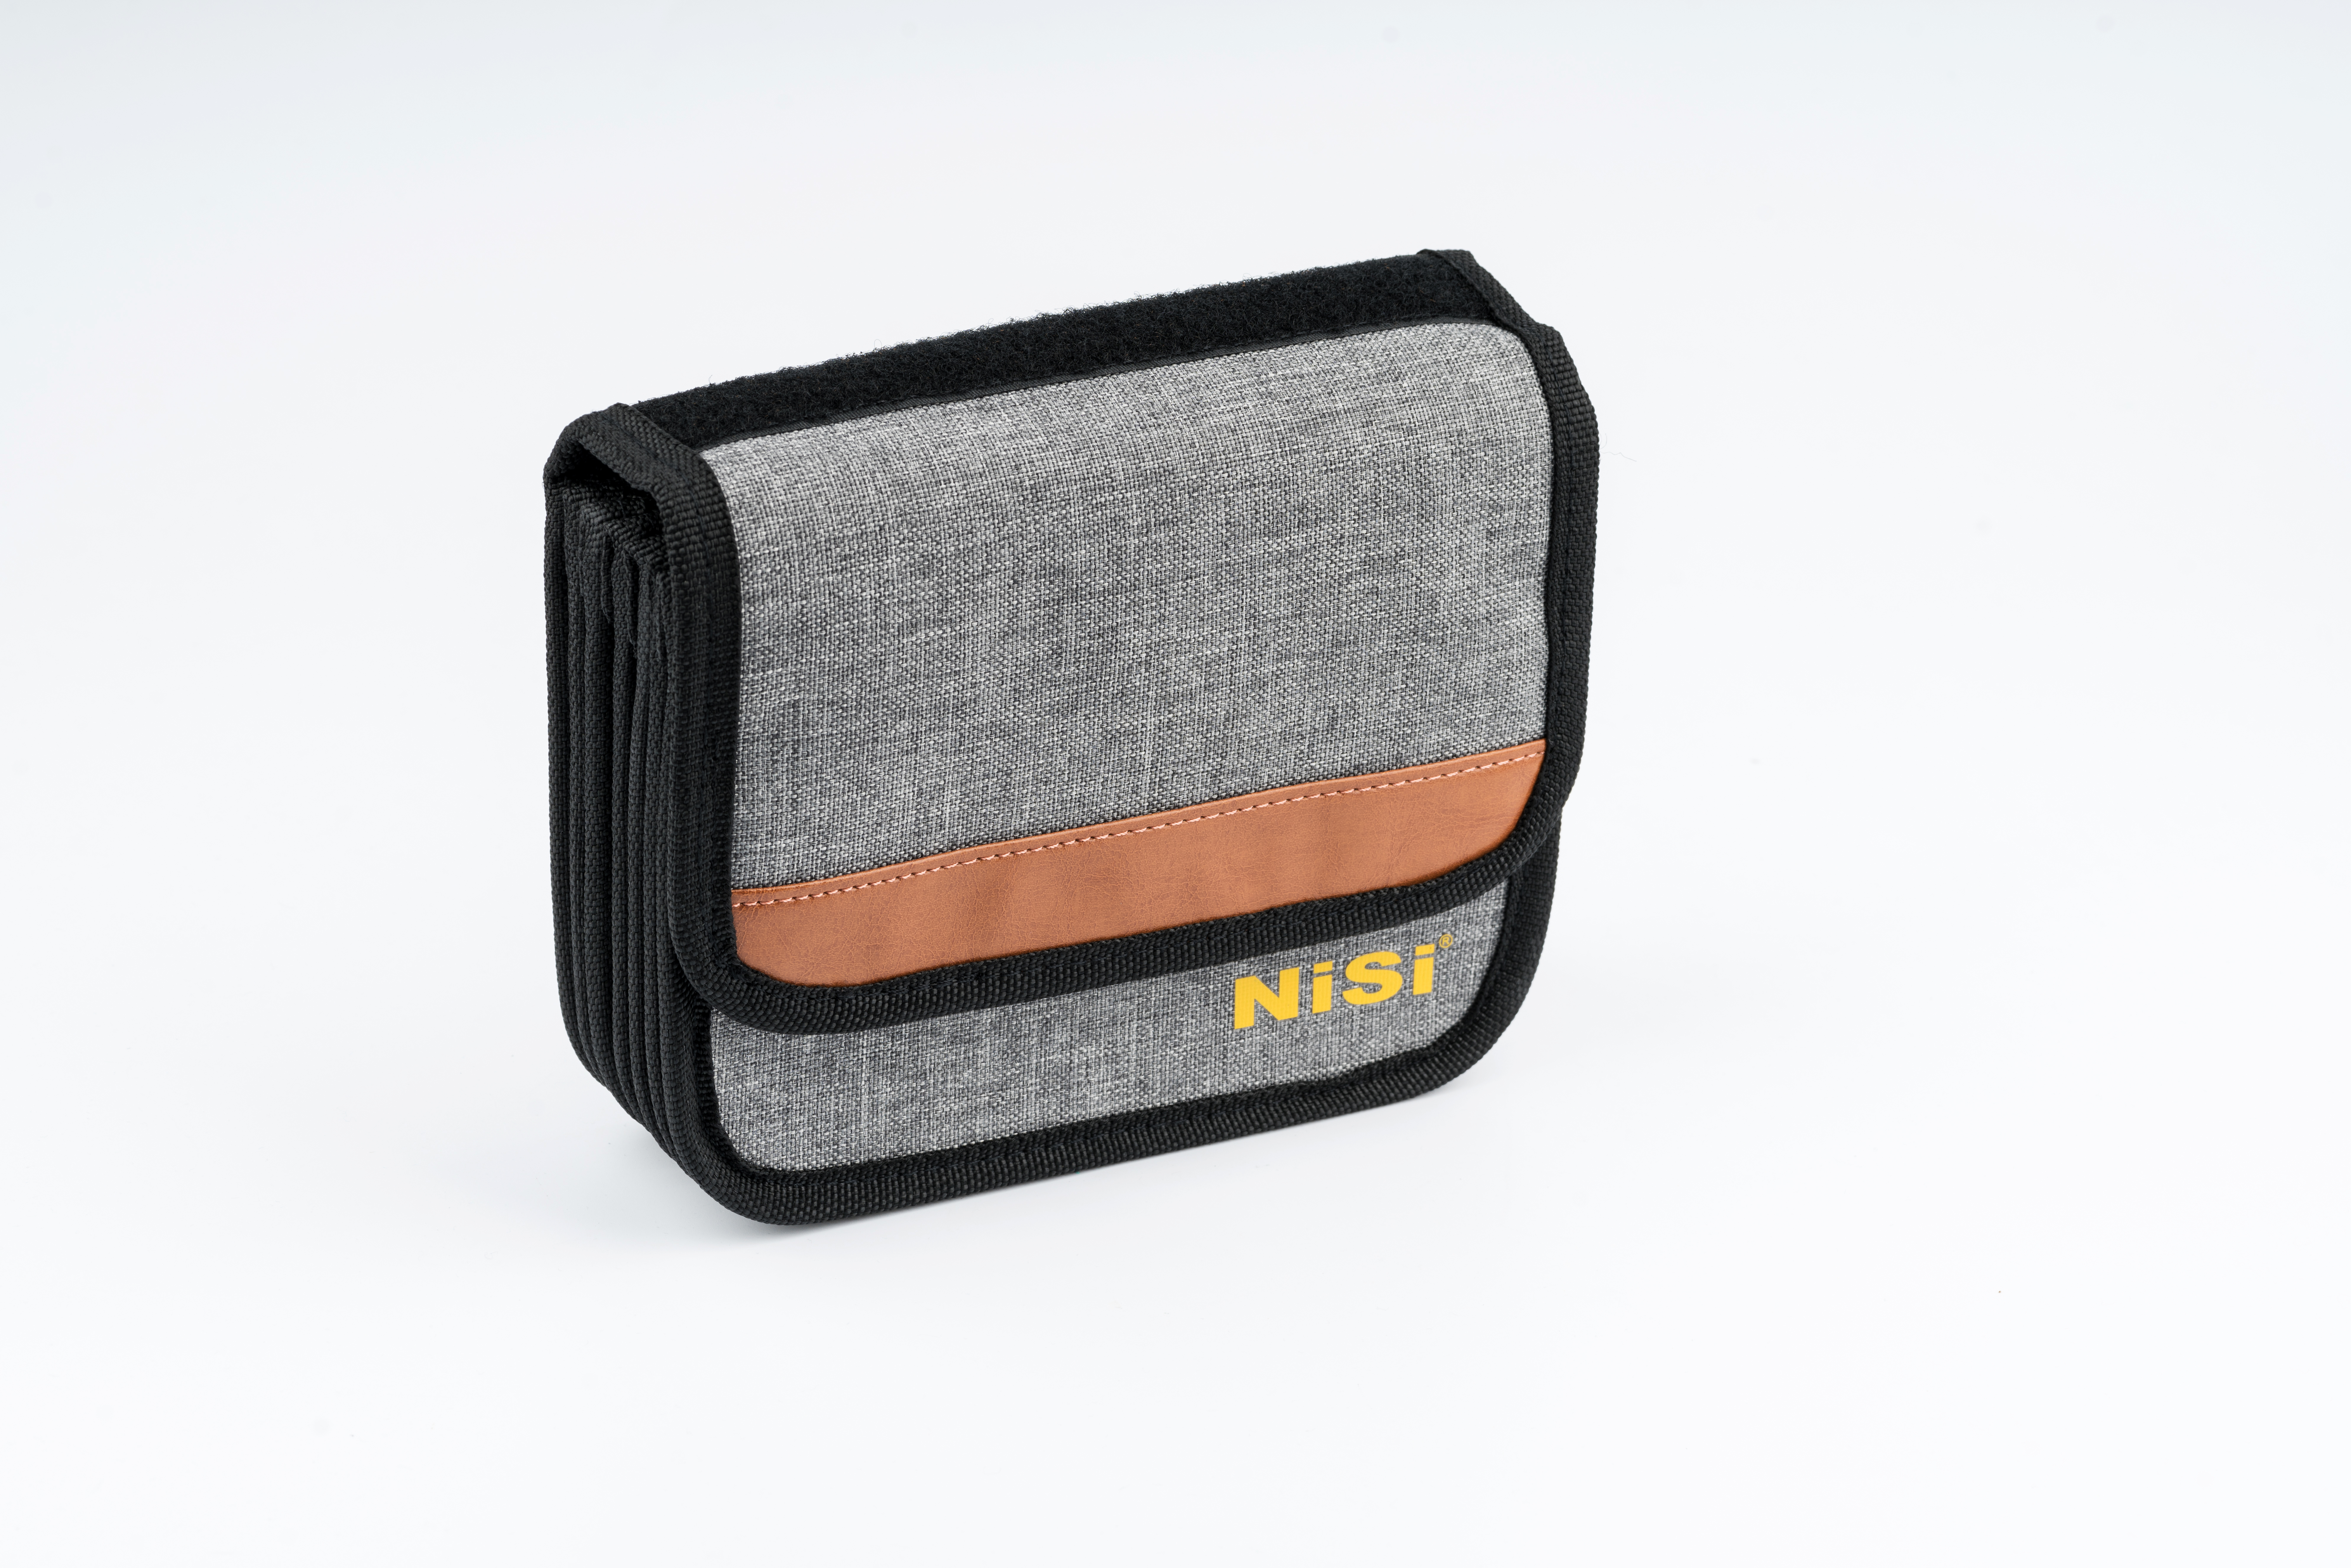 NiSi Cinema Filtertasche weich für 4x4" oder 4x5.65"